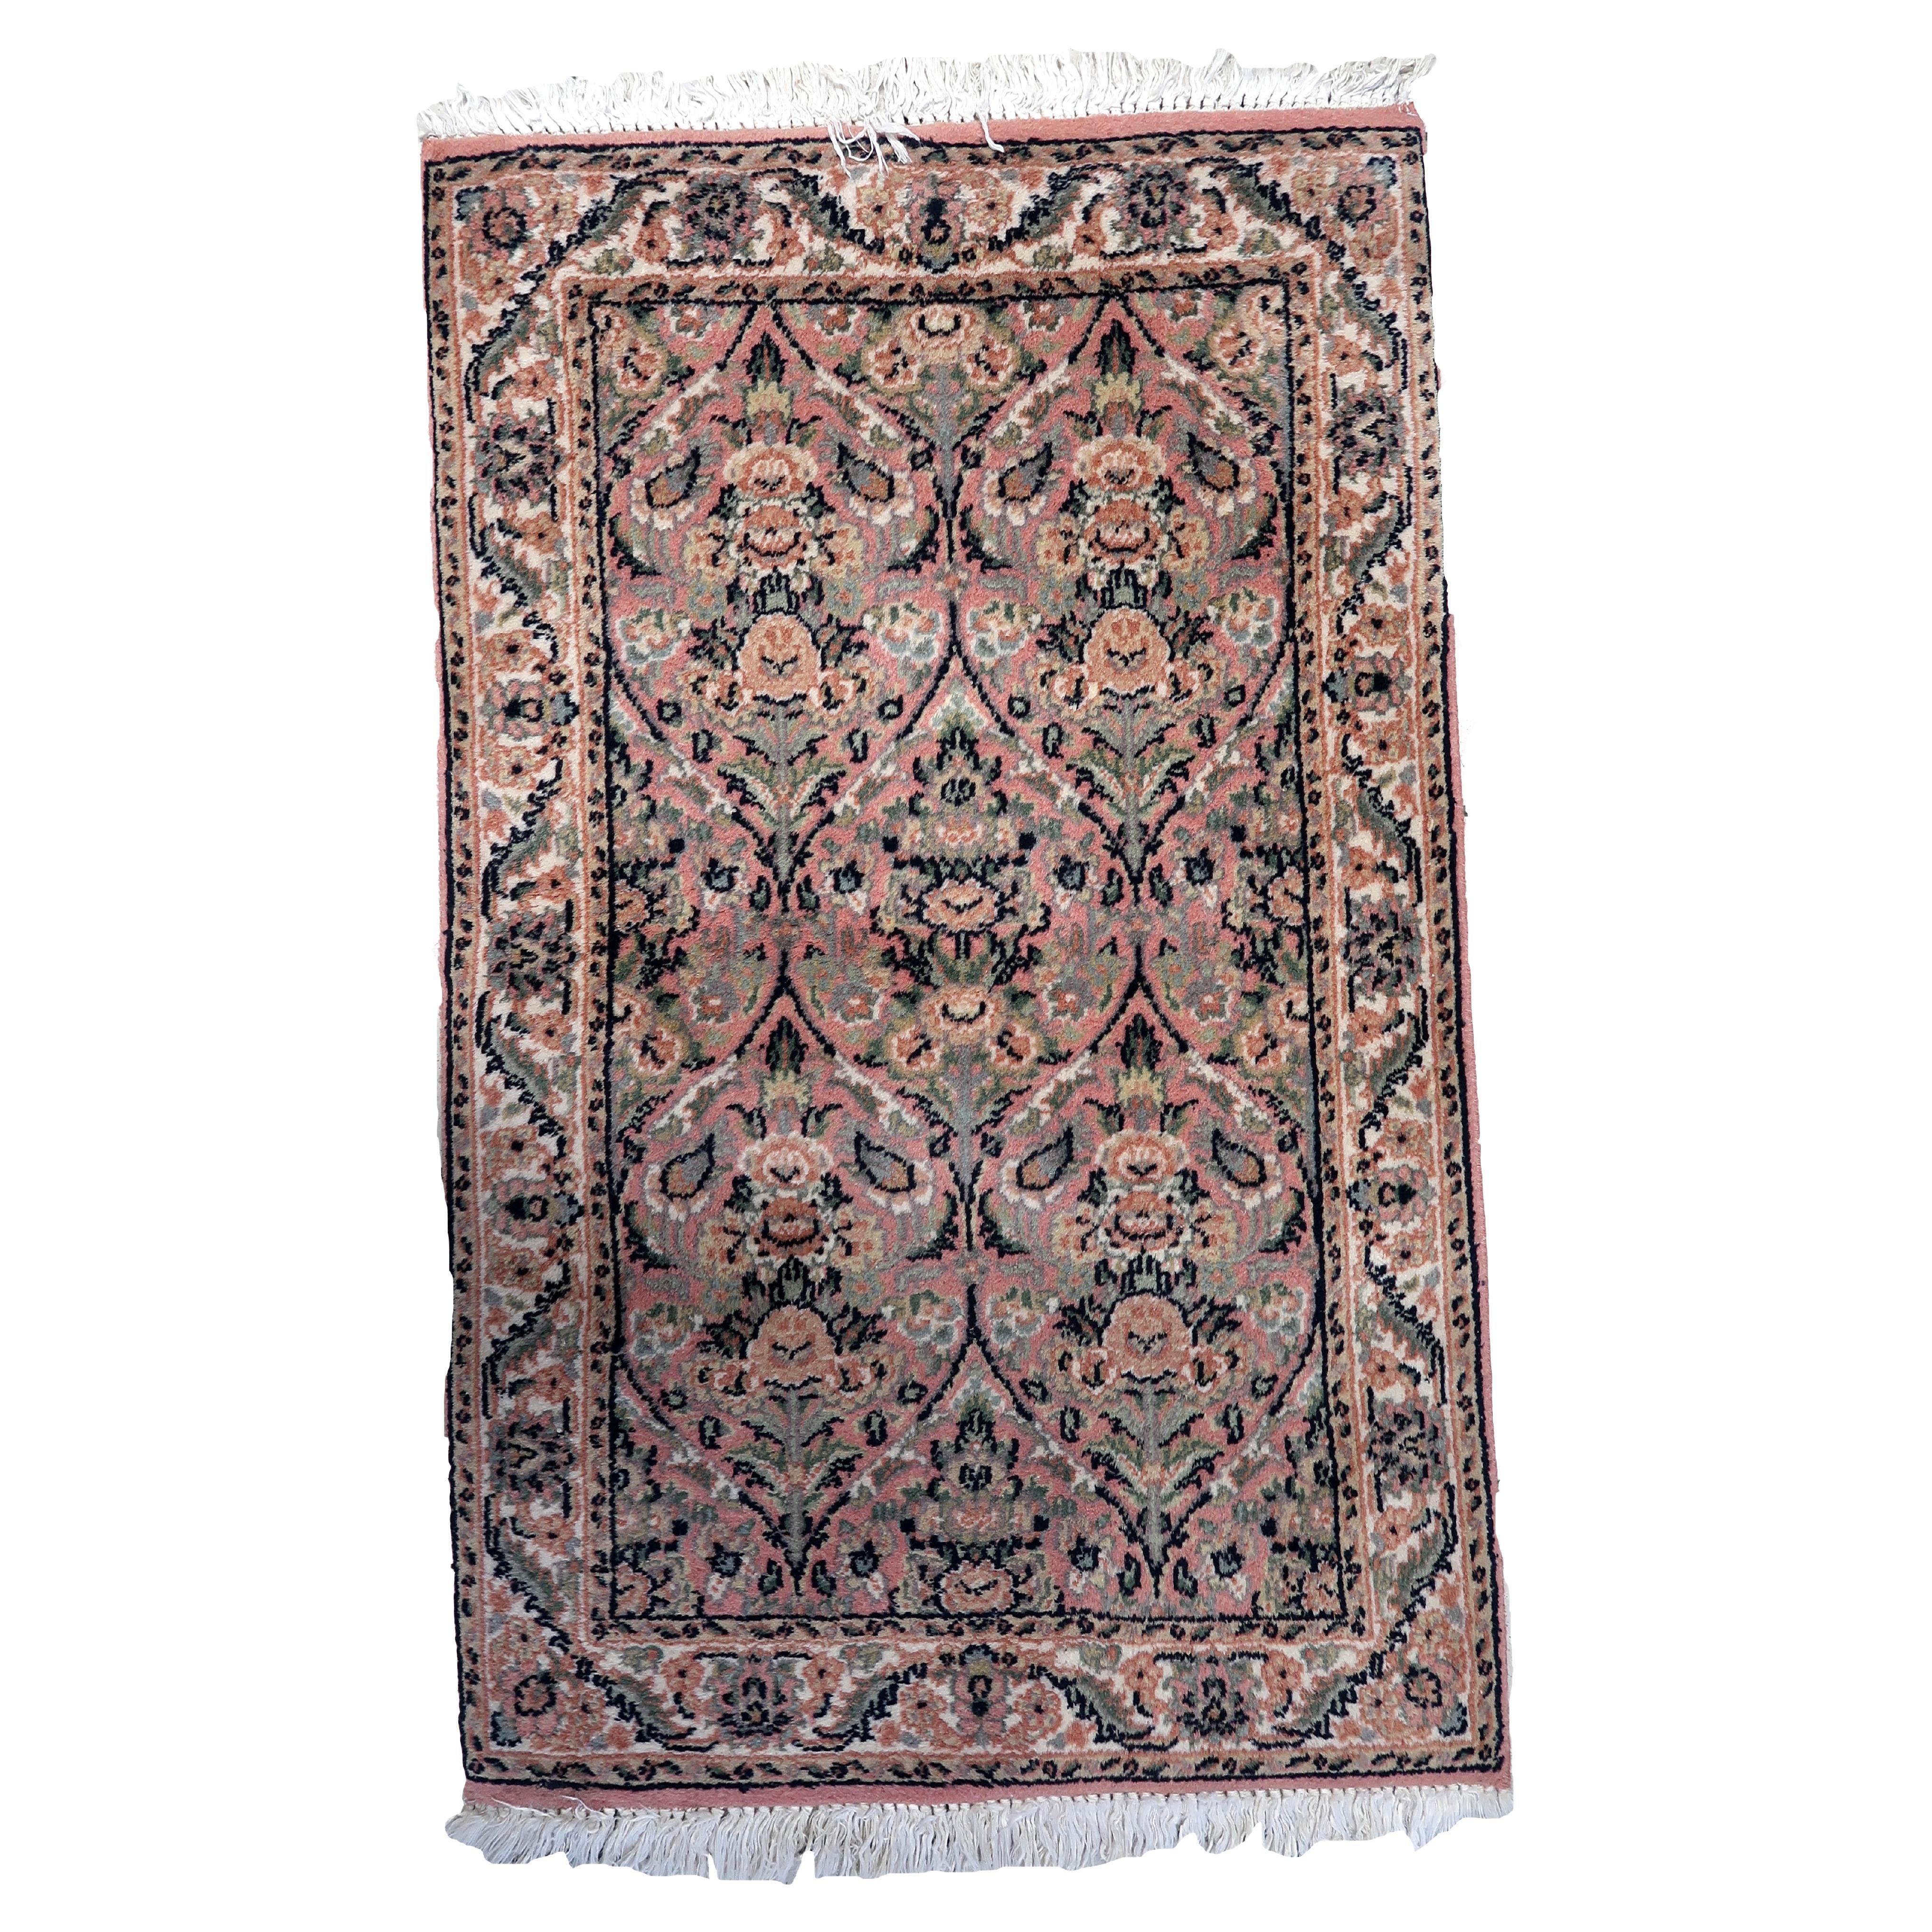 Handgefertigter persischer Kerman-Teppich im Vintage-Stil, 2' x 3.1' (61cm x 97cm) 1950er Jahre -1C1067